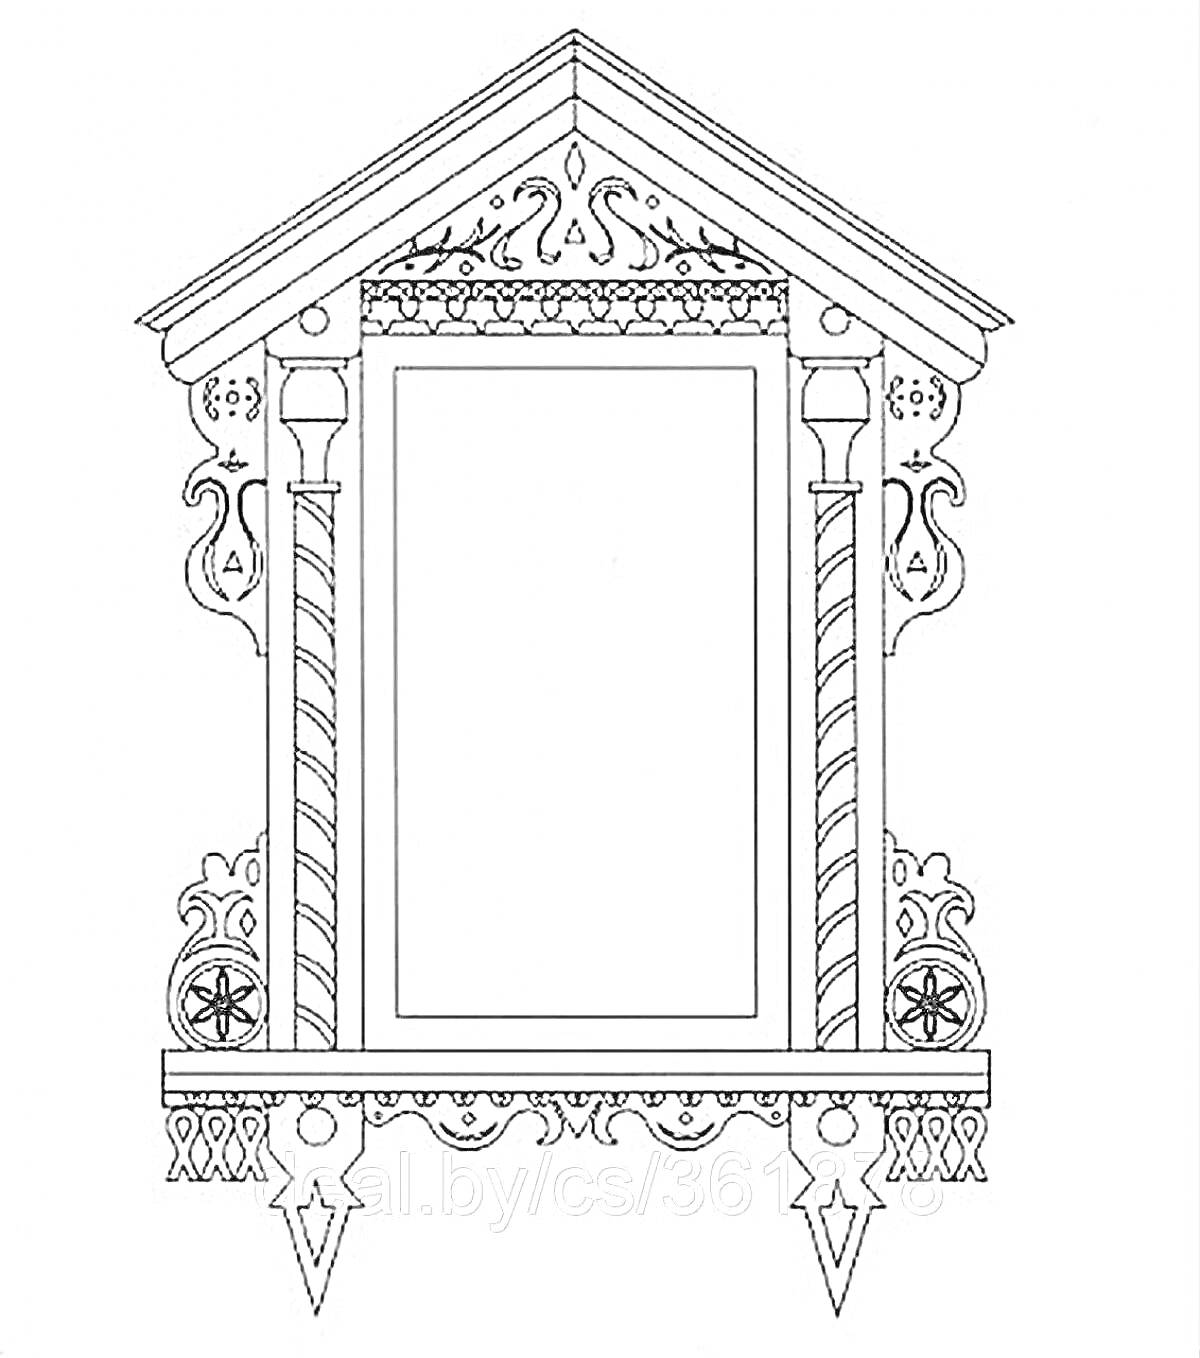 Раскраска Наличник с округлым верхом, архитектурным орнаментом, колоннами с узорами, звёздами в кругах и треугольным козырьком